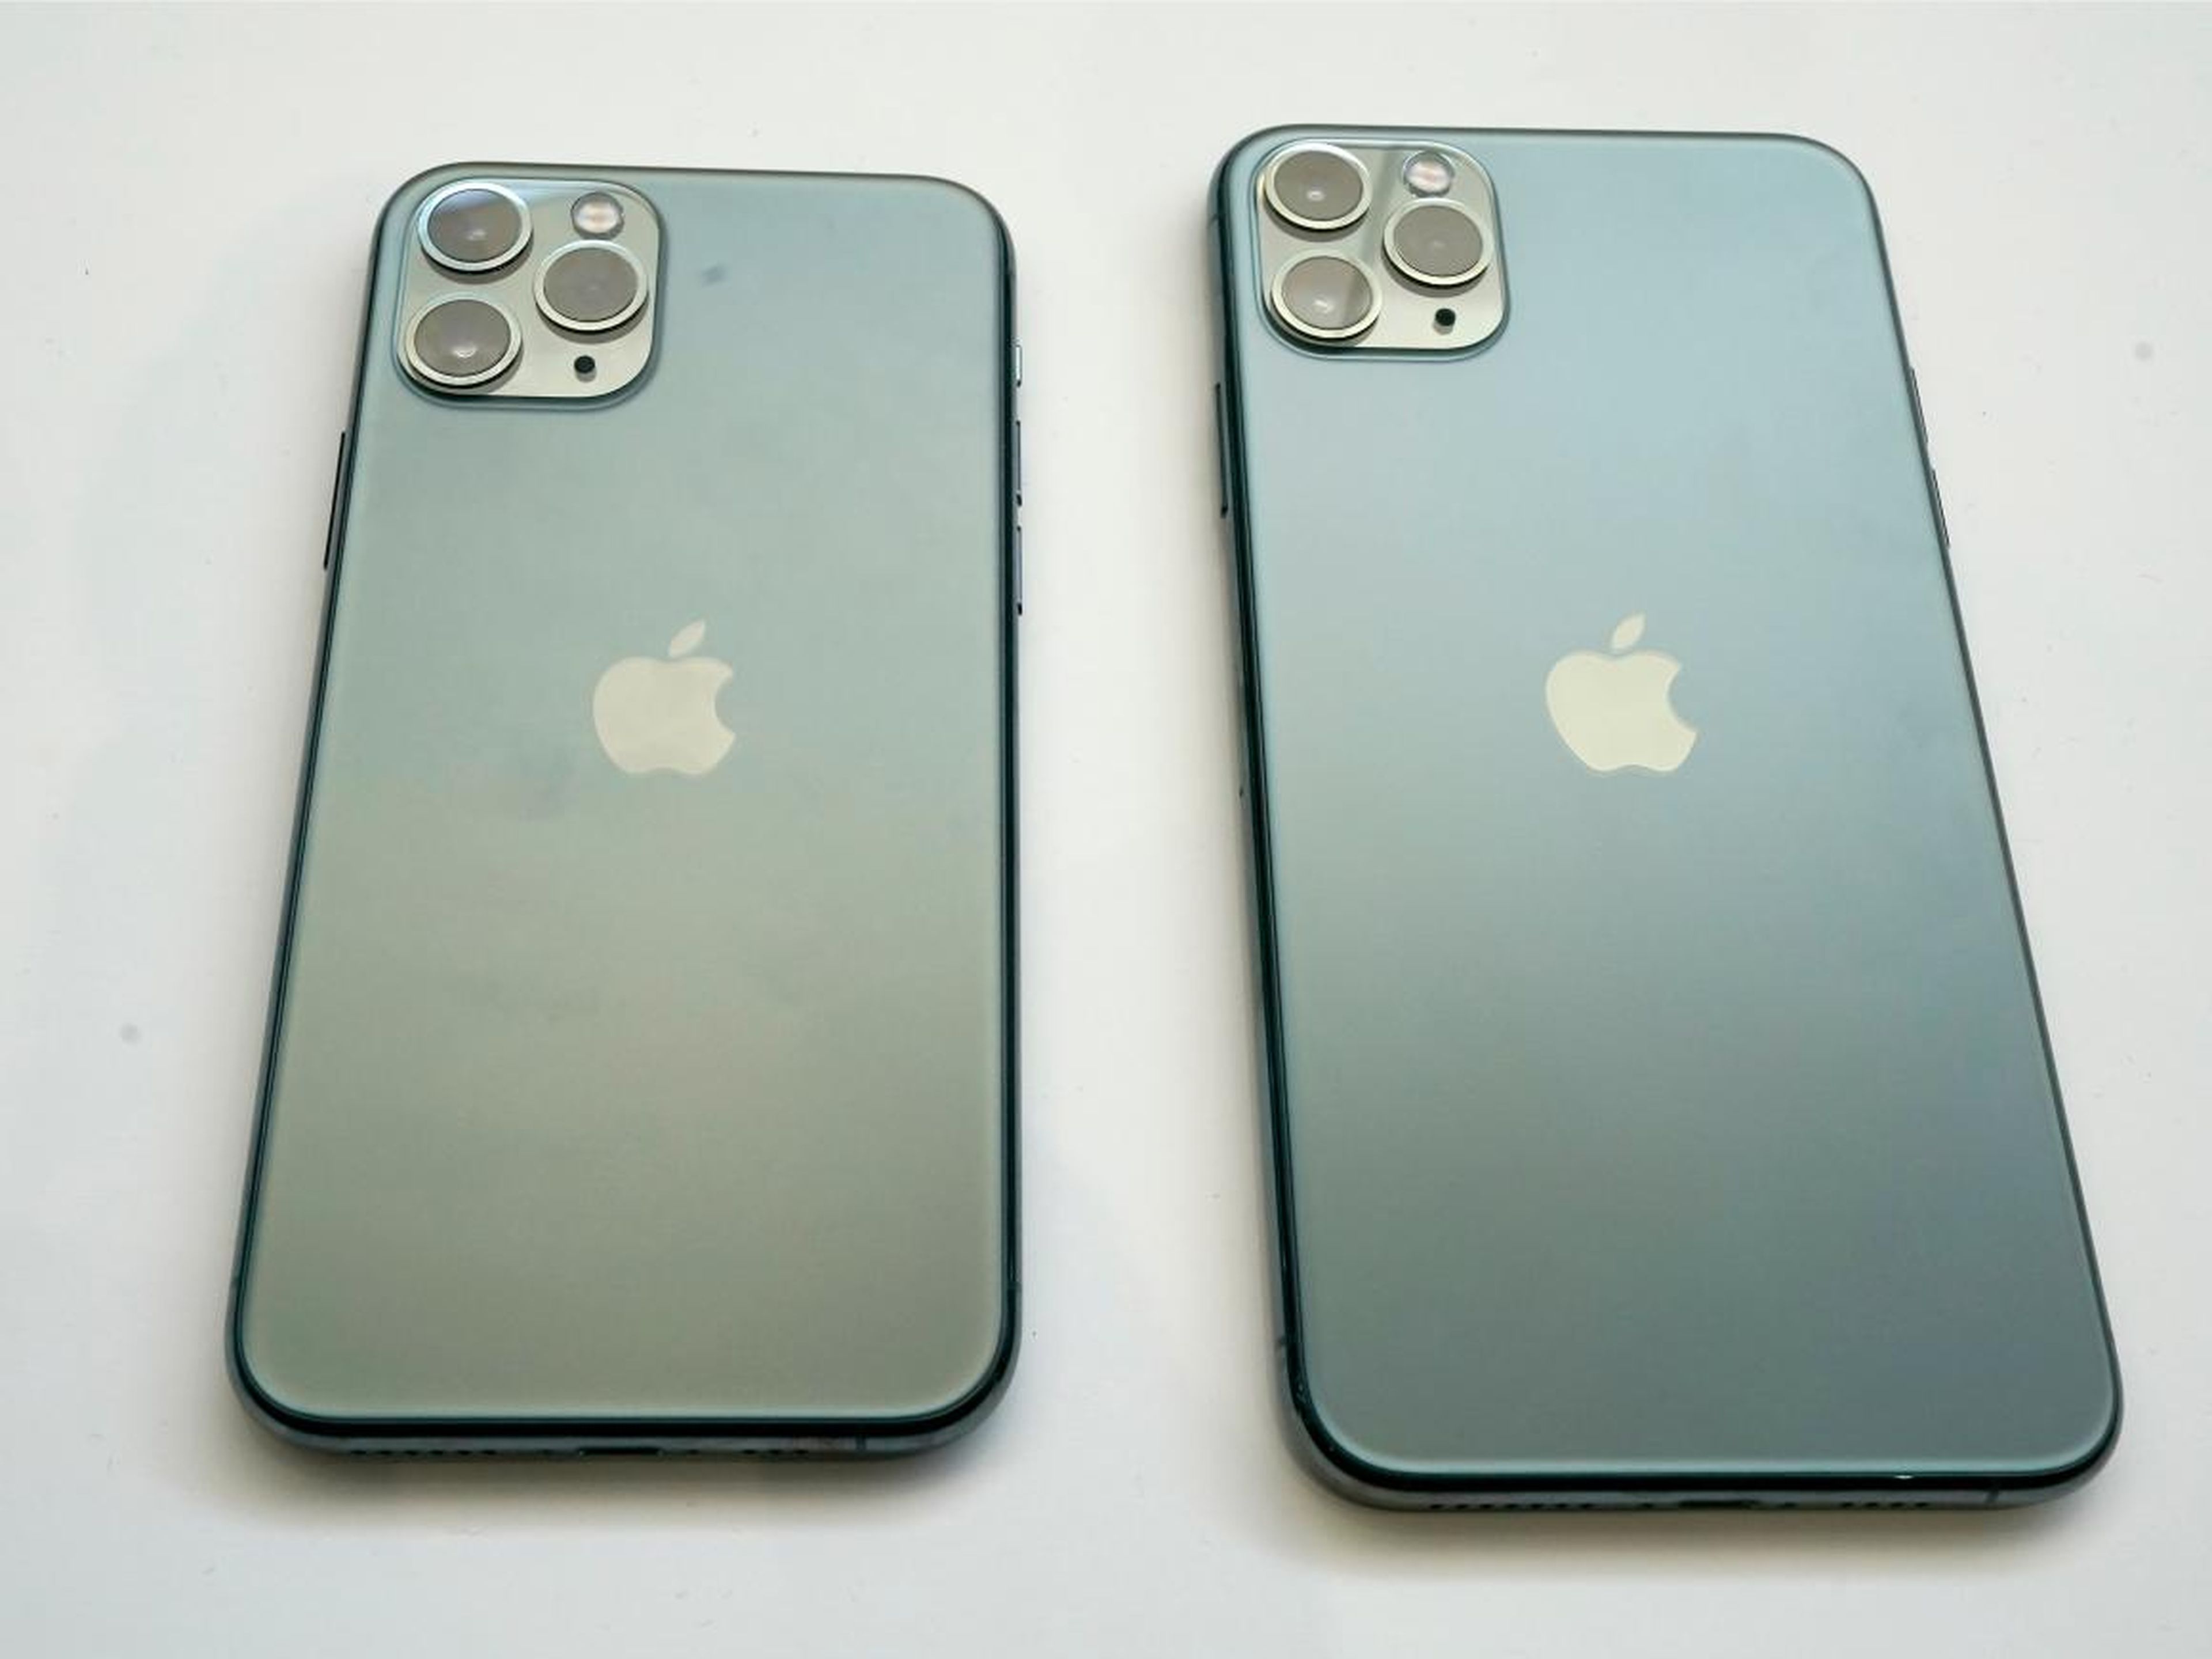 Comparación de iPhone 11 Pro con iPhone 11 Pro Max